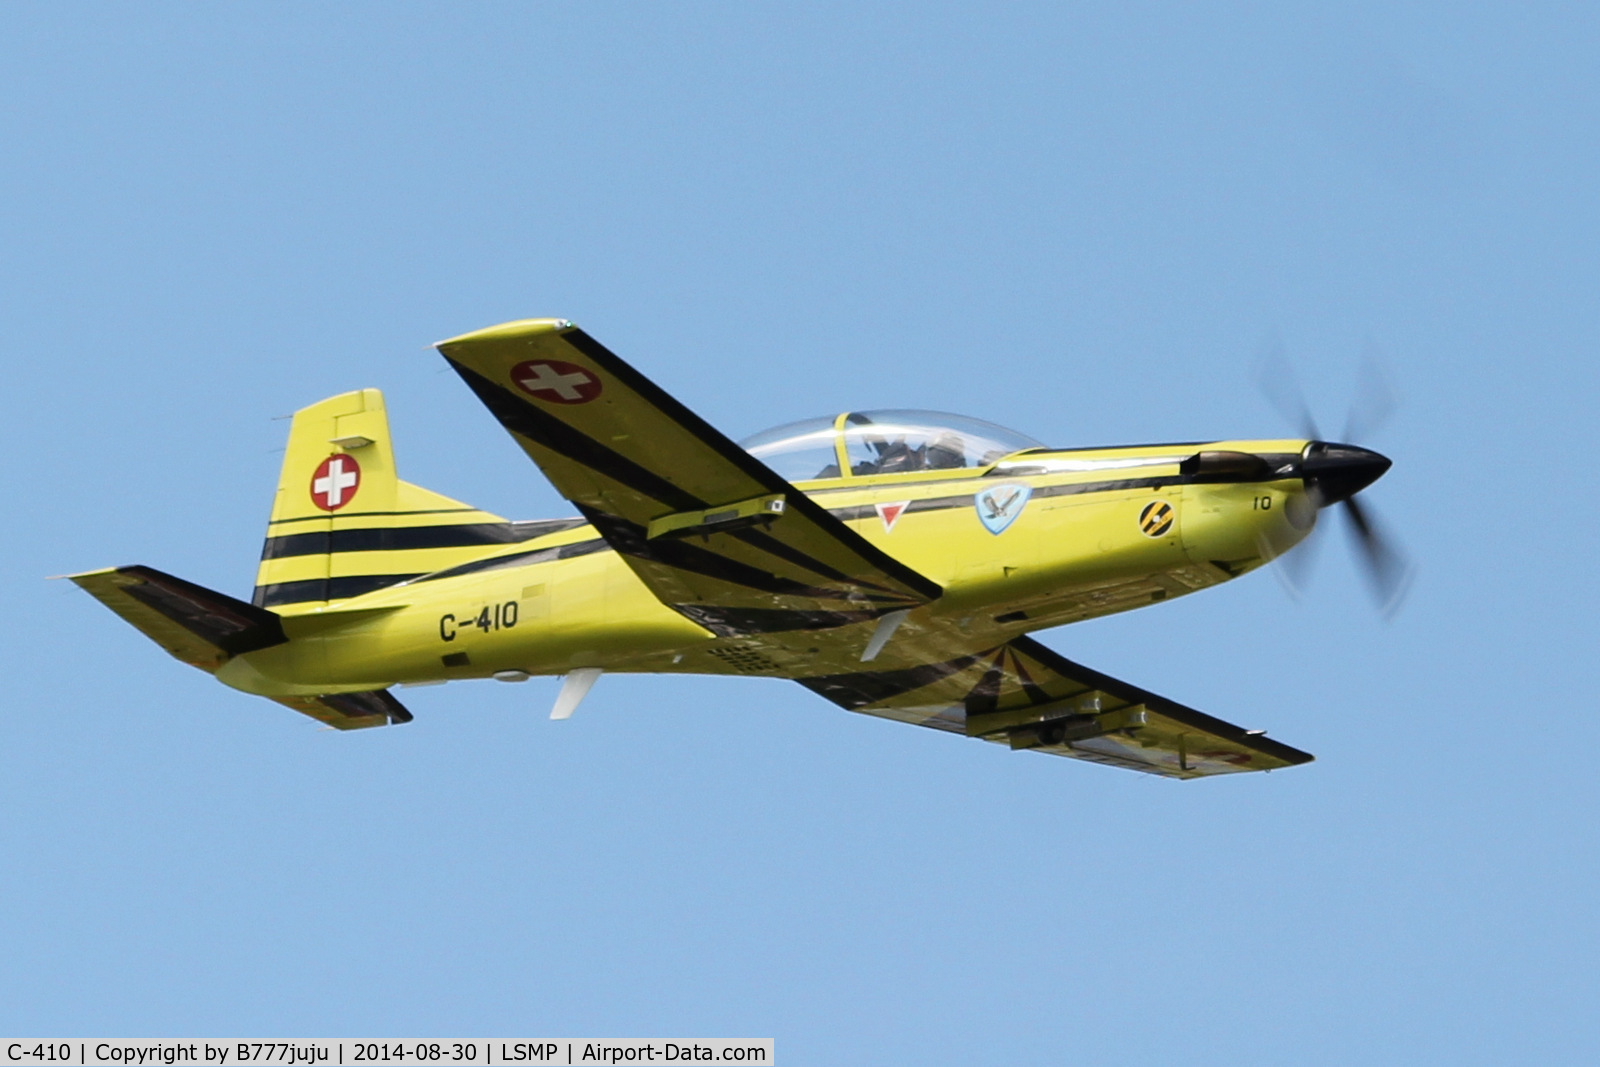 C-410, Pilatus PC-9 C/N 222, at AIR14